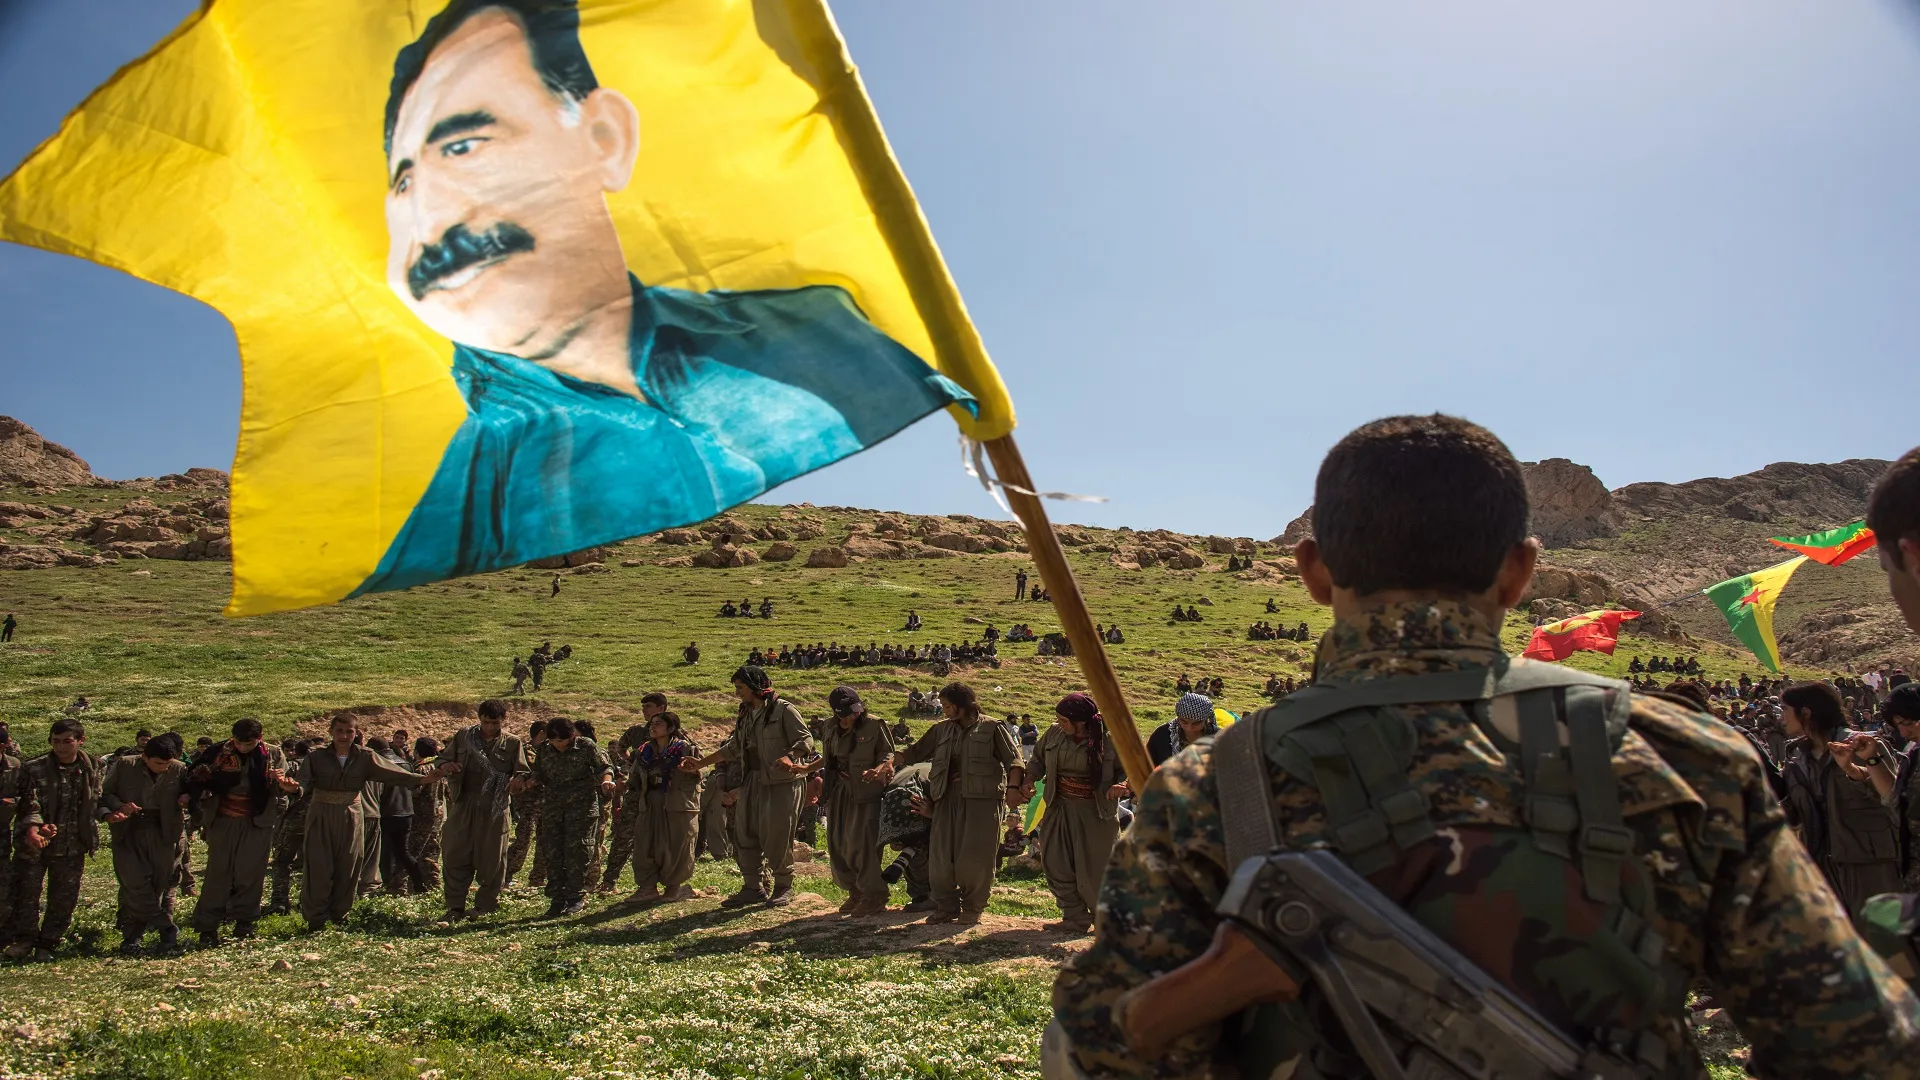 سياسي كردي: وجود عناصر "العمال الكردستاني" يعرض شمال سوريا للتهديدات والمخاطر